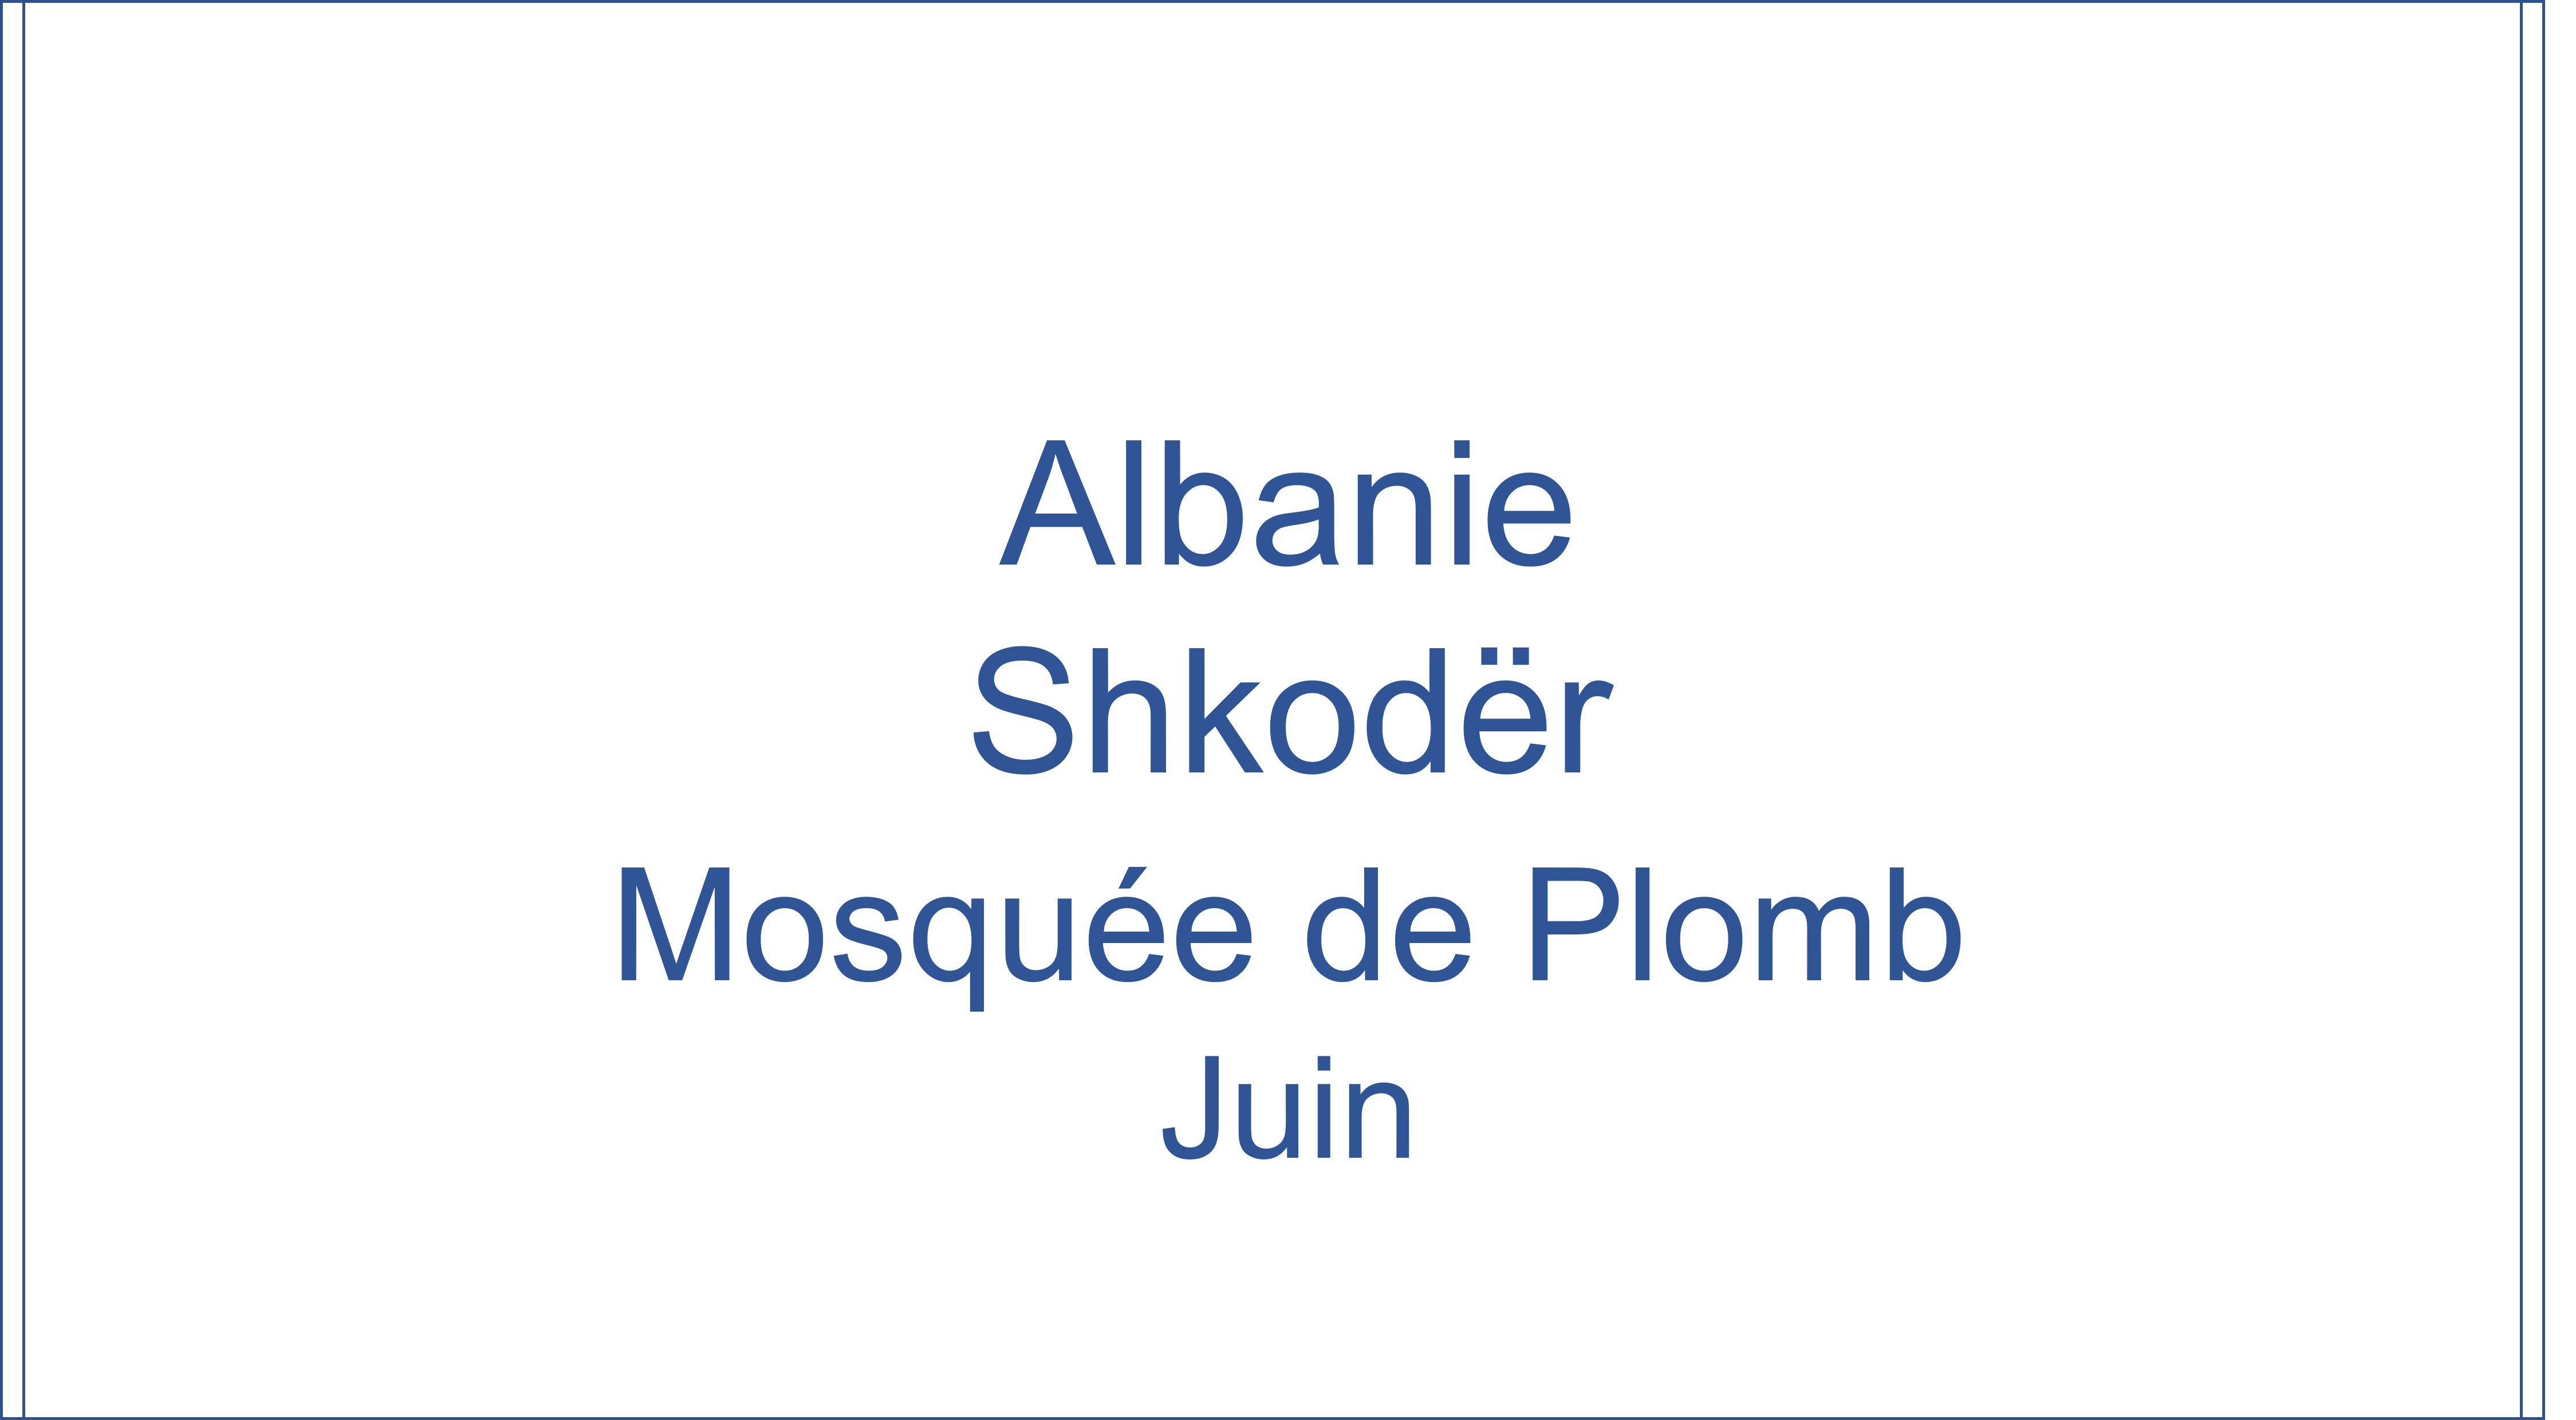 Albanie - Shkoder Mosquee de Plomb 06/2022